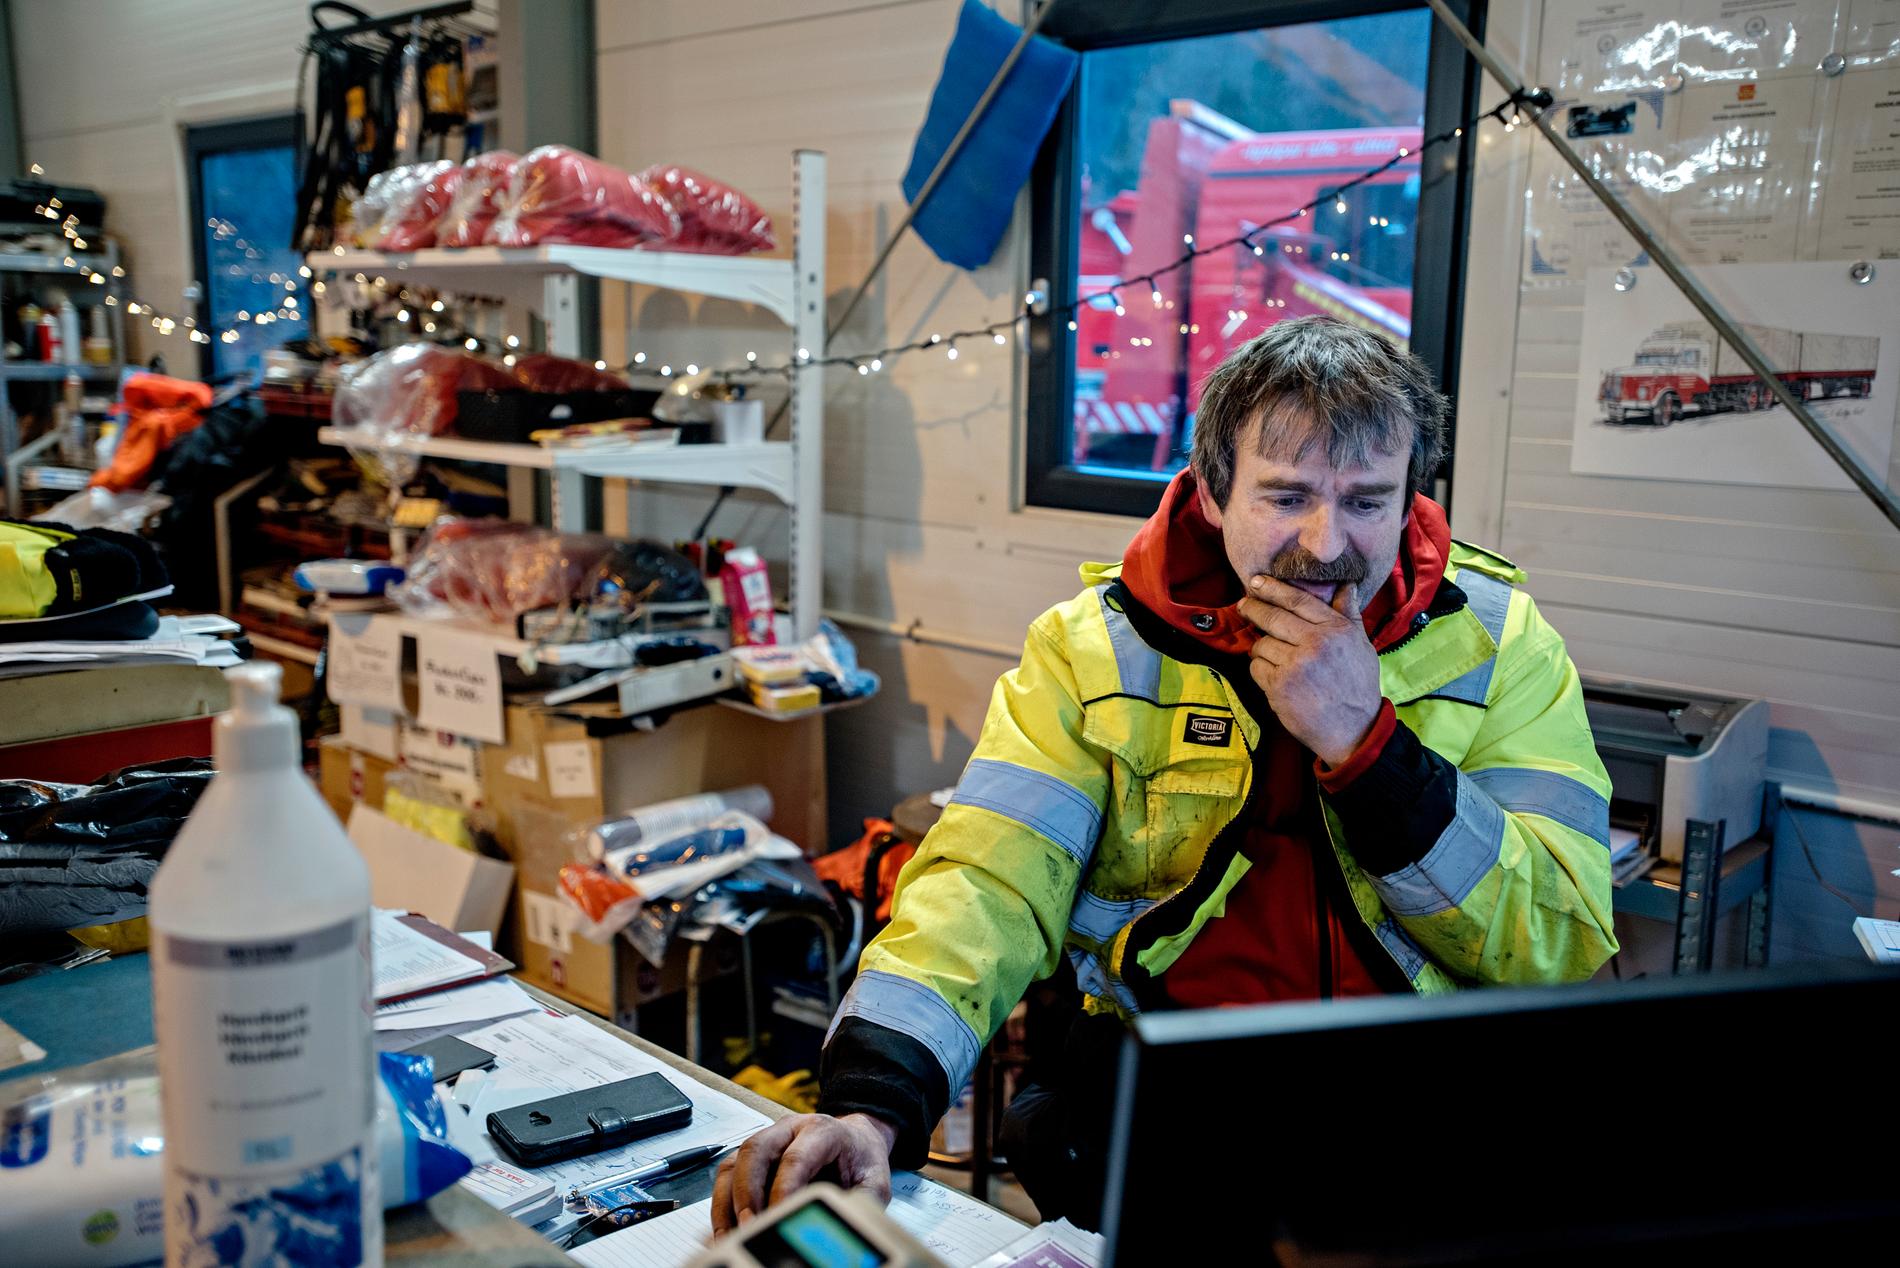 Julestemning på verkstedet, og Bjørn Lægreid er i beredskap før juletrafikken.